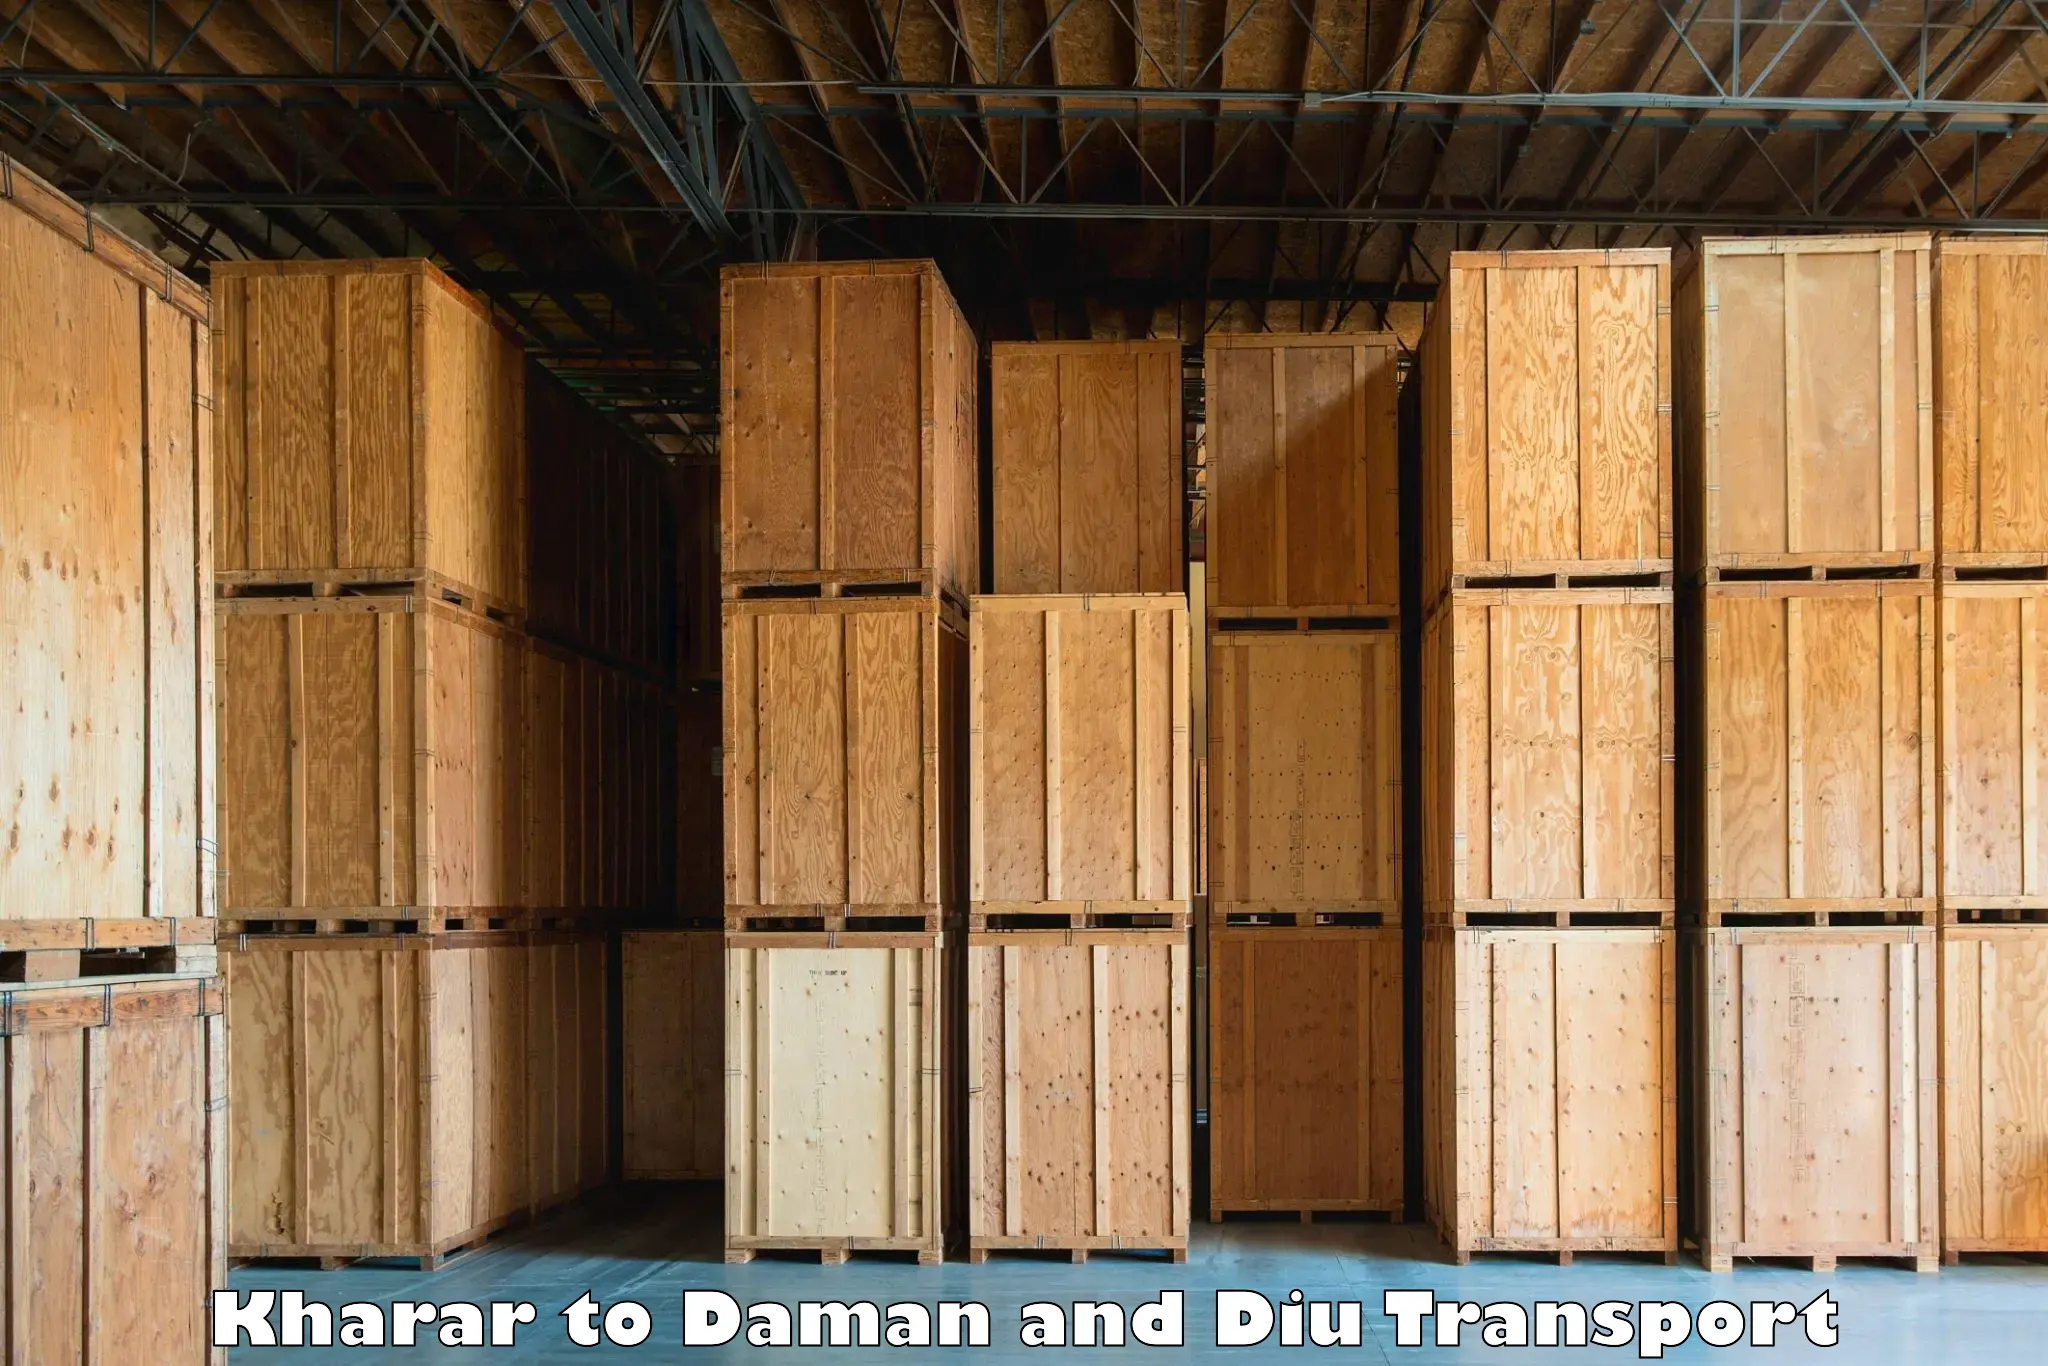 Furniture transport service Kharar to Daman and Diu